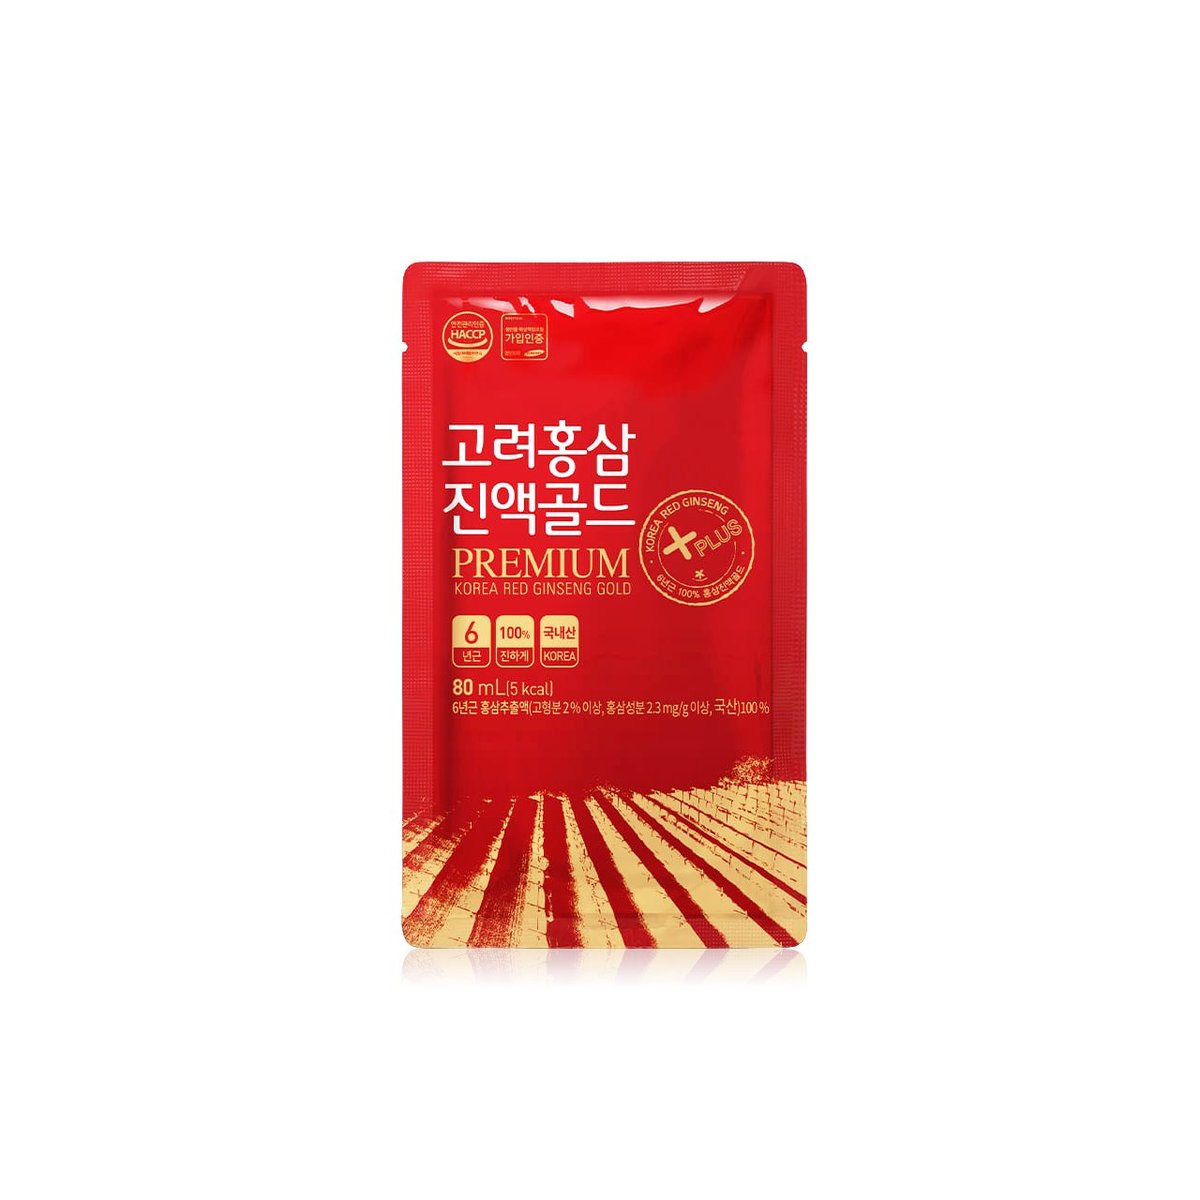 Nước hồng sâm nguyên chất Hàn Quốc Daedong Korea Ginseng 30 gói - Dành riêng cho người tiểu đường và mỡ máu cao, phòng ngừa ung thư, chống lão hóa